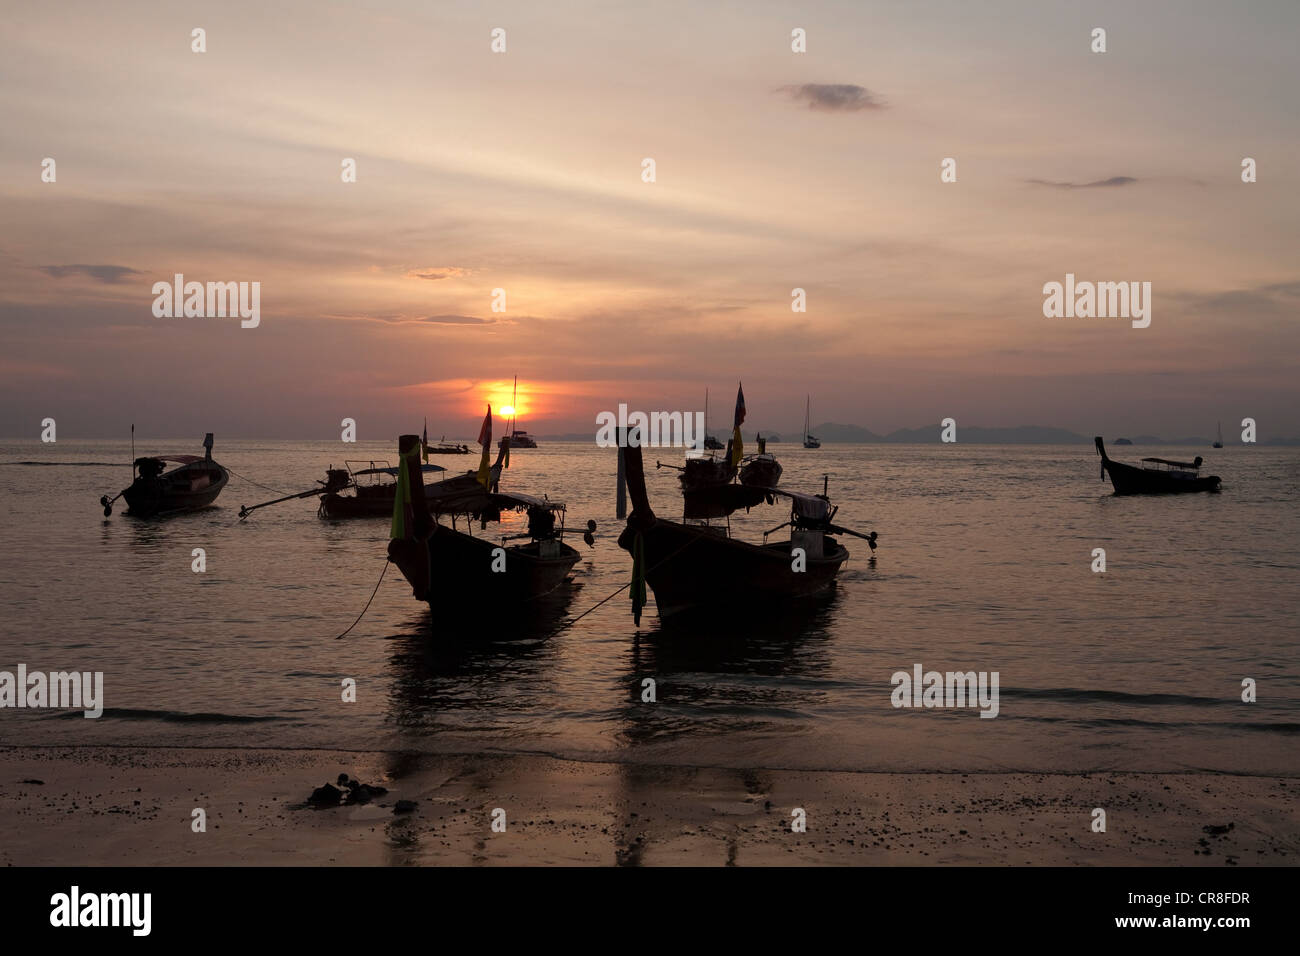 Les bateaux de pêche amarrés sur l'île de Krabi, Thaïlande Banque D'Images